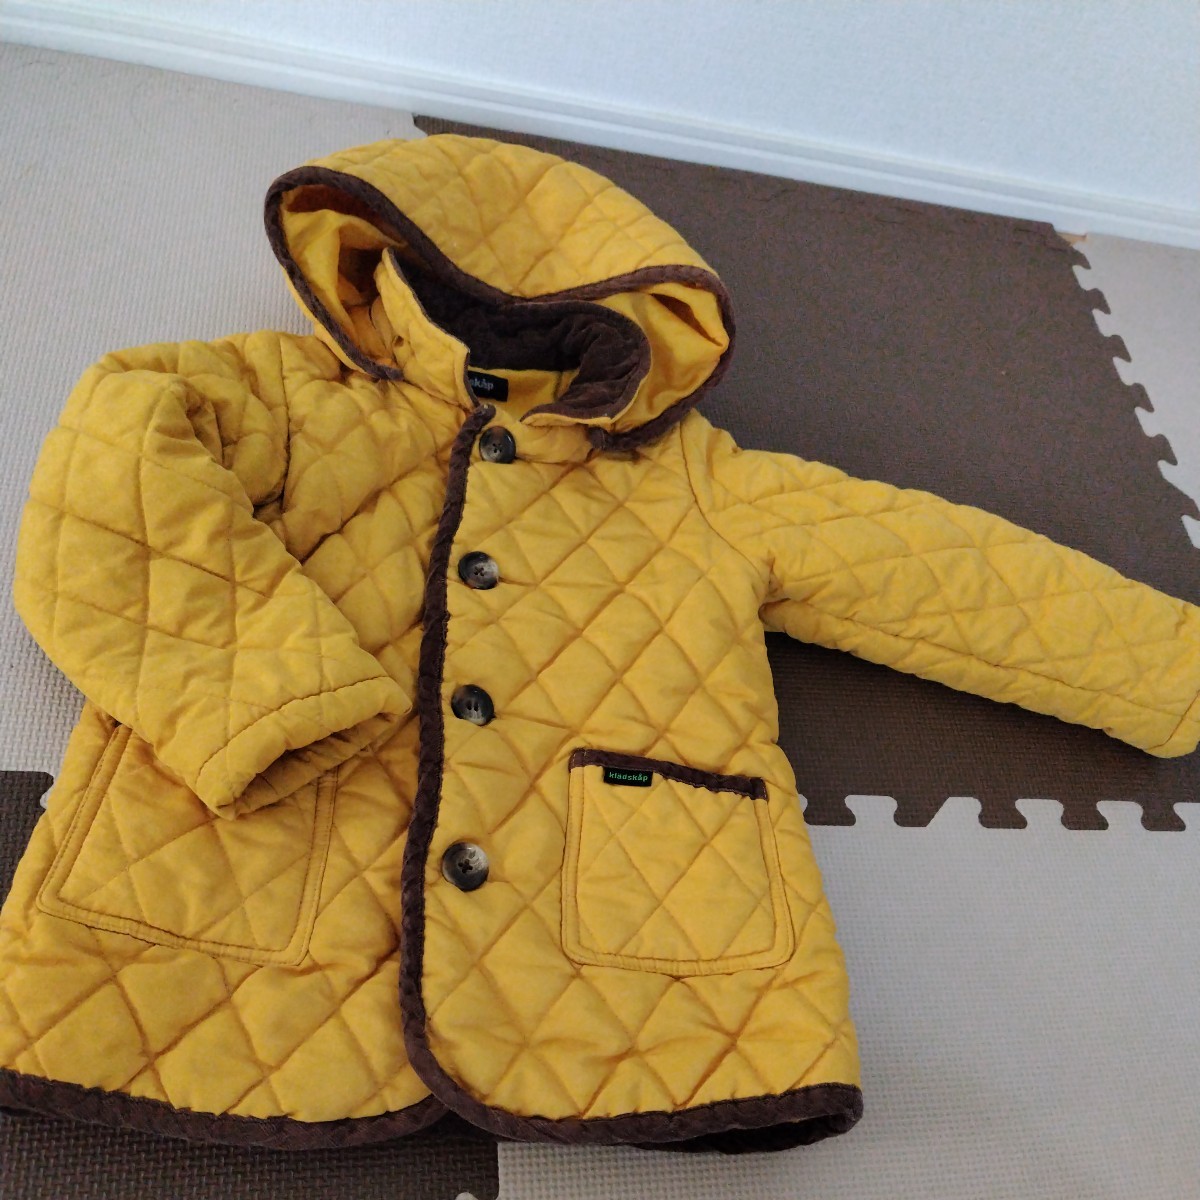 ...　kladskap 110 размер  　 жёлтый  цвет 　 жёлтый 　...　 пальто 　 пиджак 　... тоже 　 еда   можно снять 